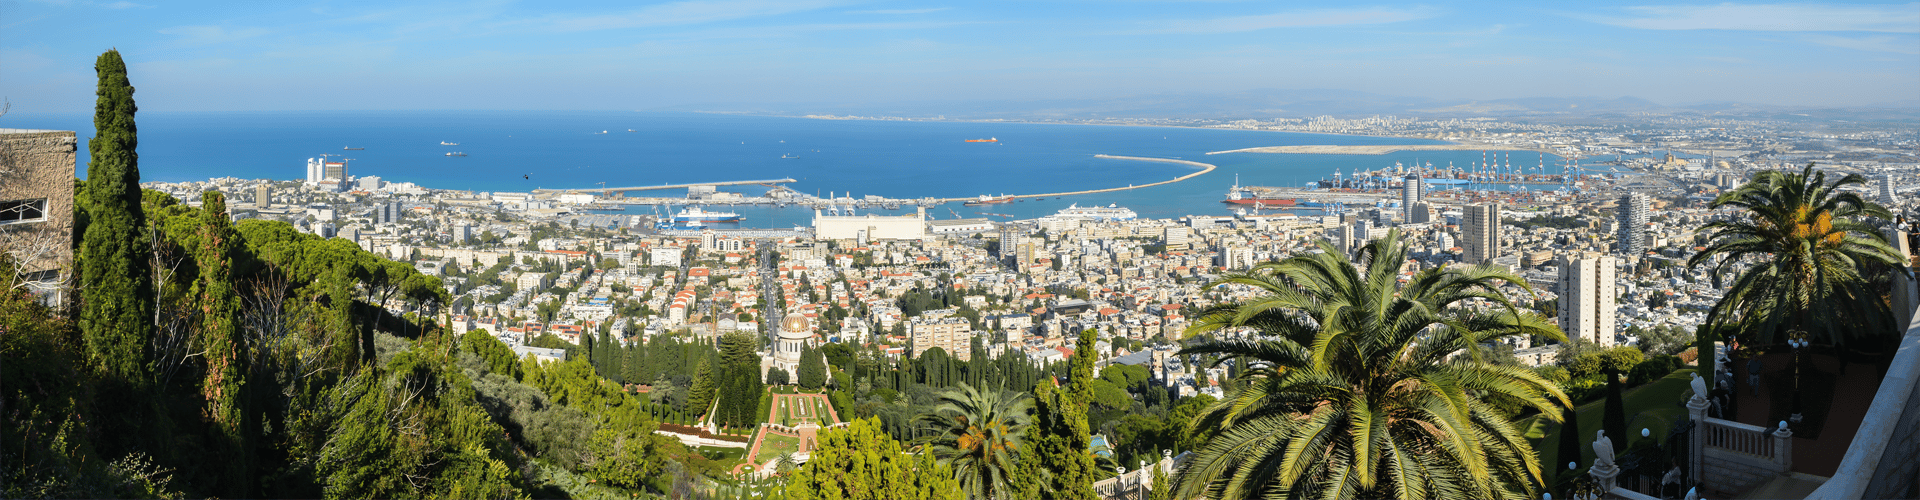 Essential Free Tour Haifa Banner